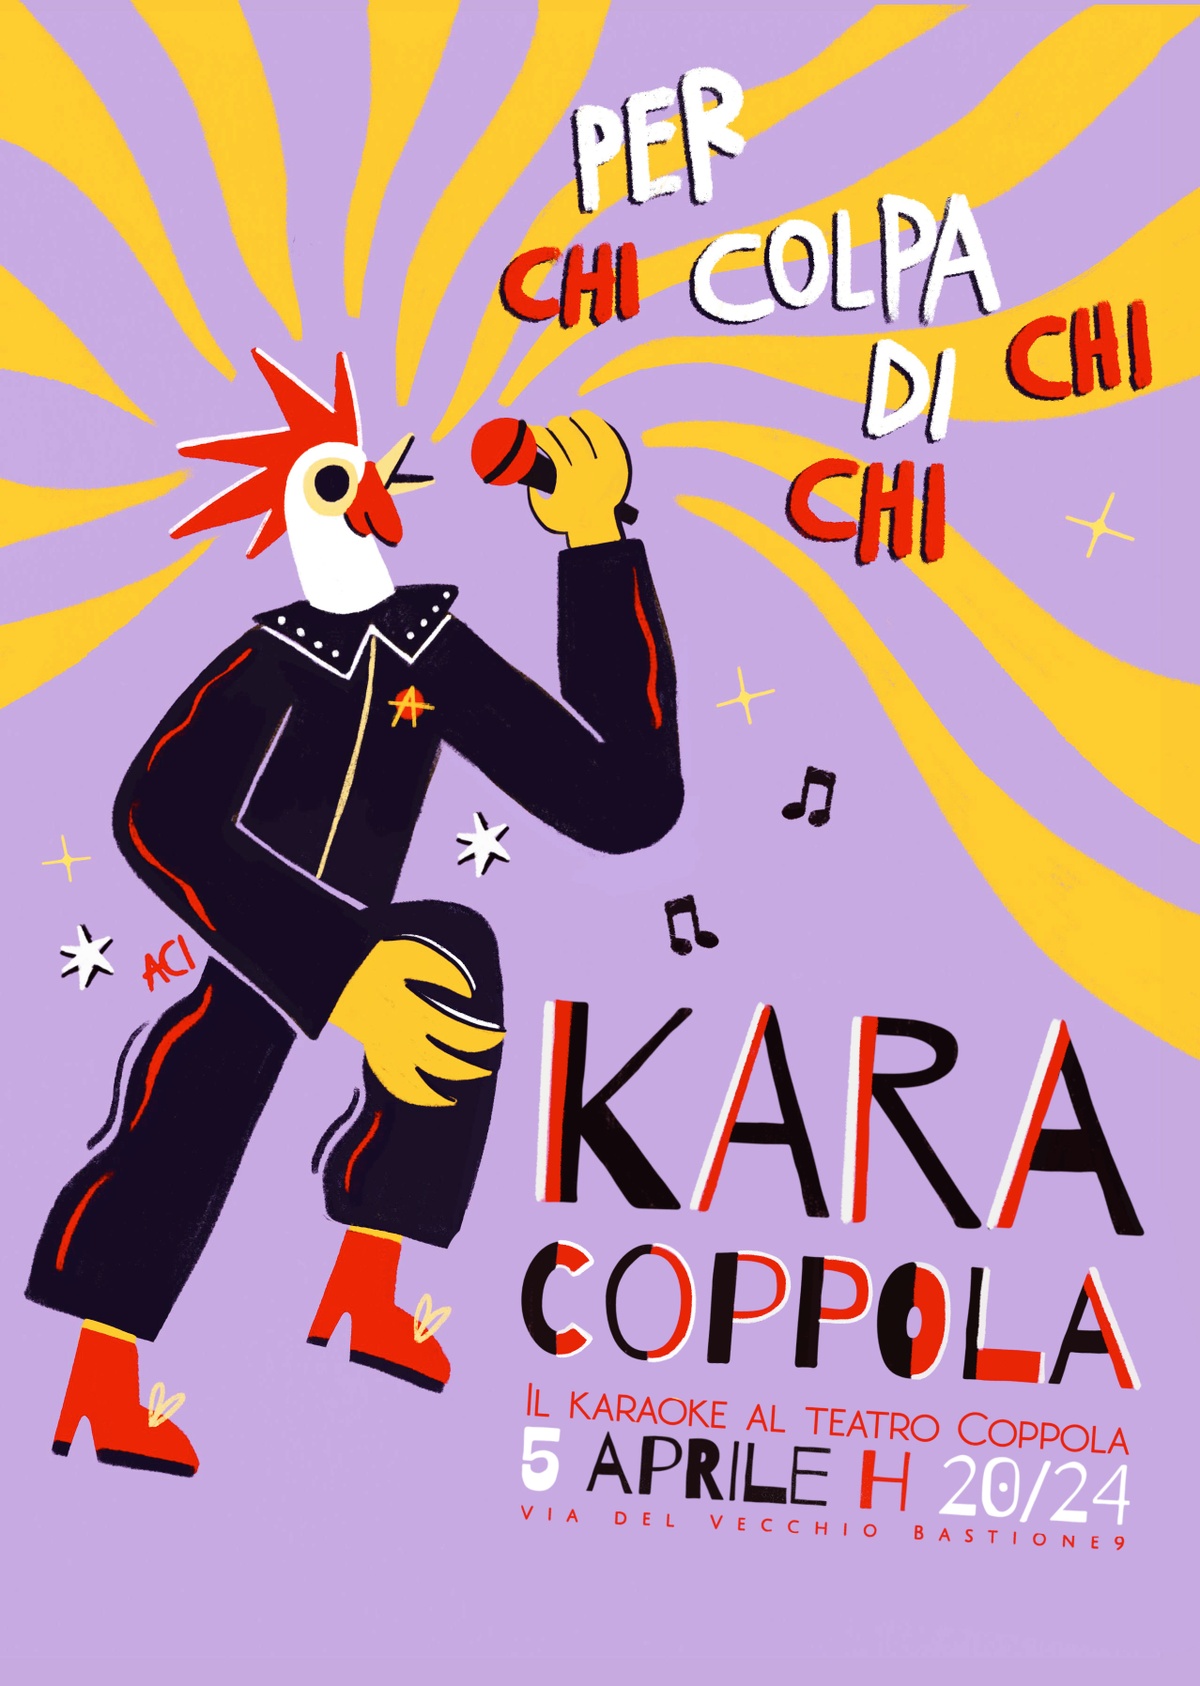 KARACOPPOLA - Il karaoke al Teatro Coppola (dalle 20.00 alle 00.00)